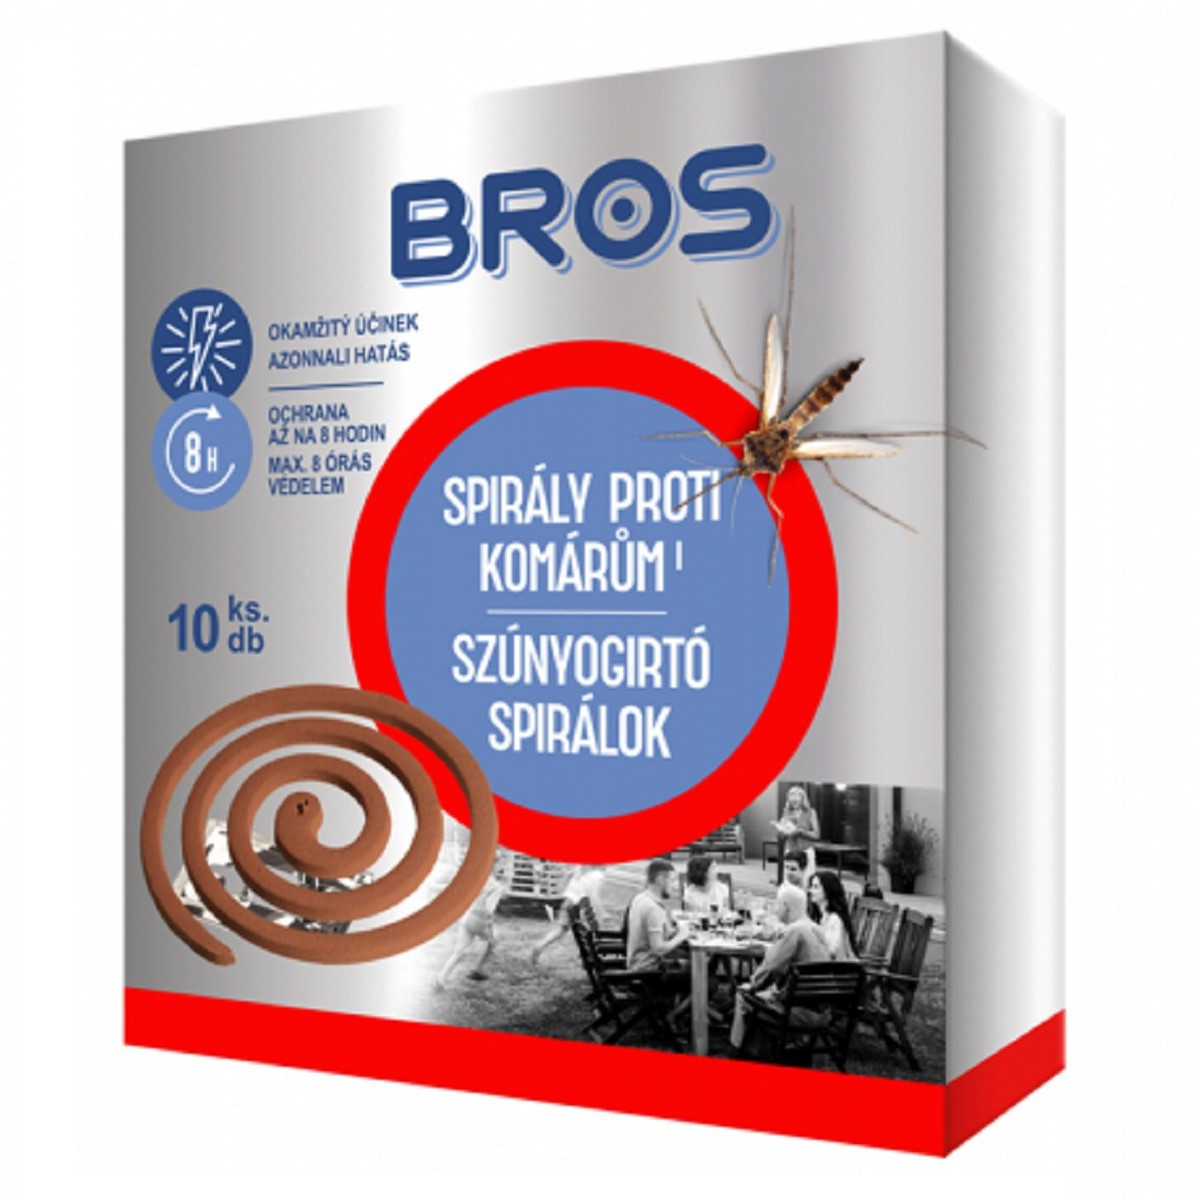 Spirály proti komárům - Bros - ochrana proti hmyzu - 10 ks